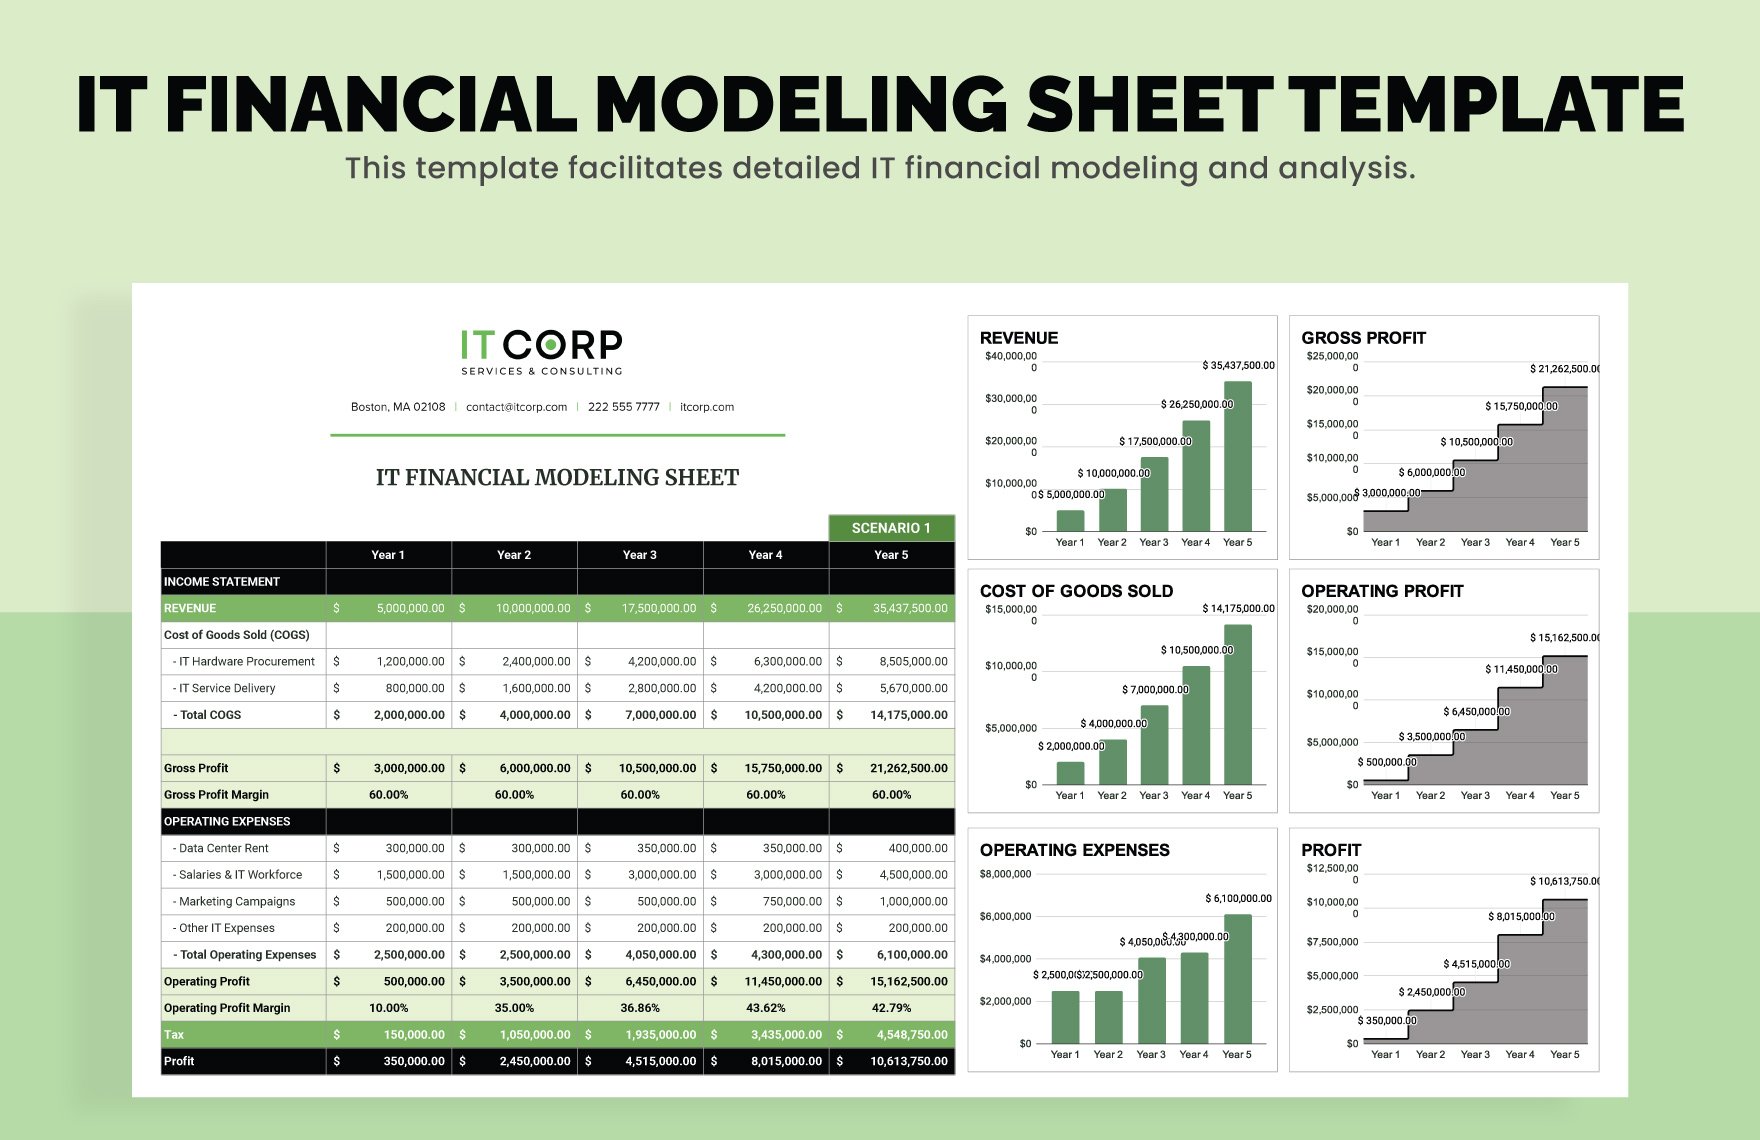 IT Financial Modeling Sheet Template